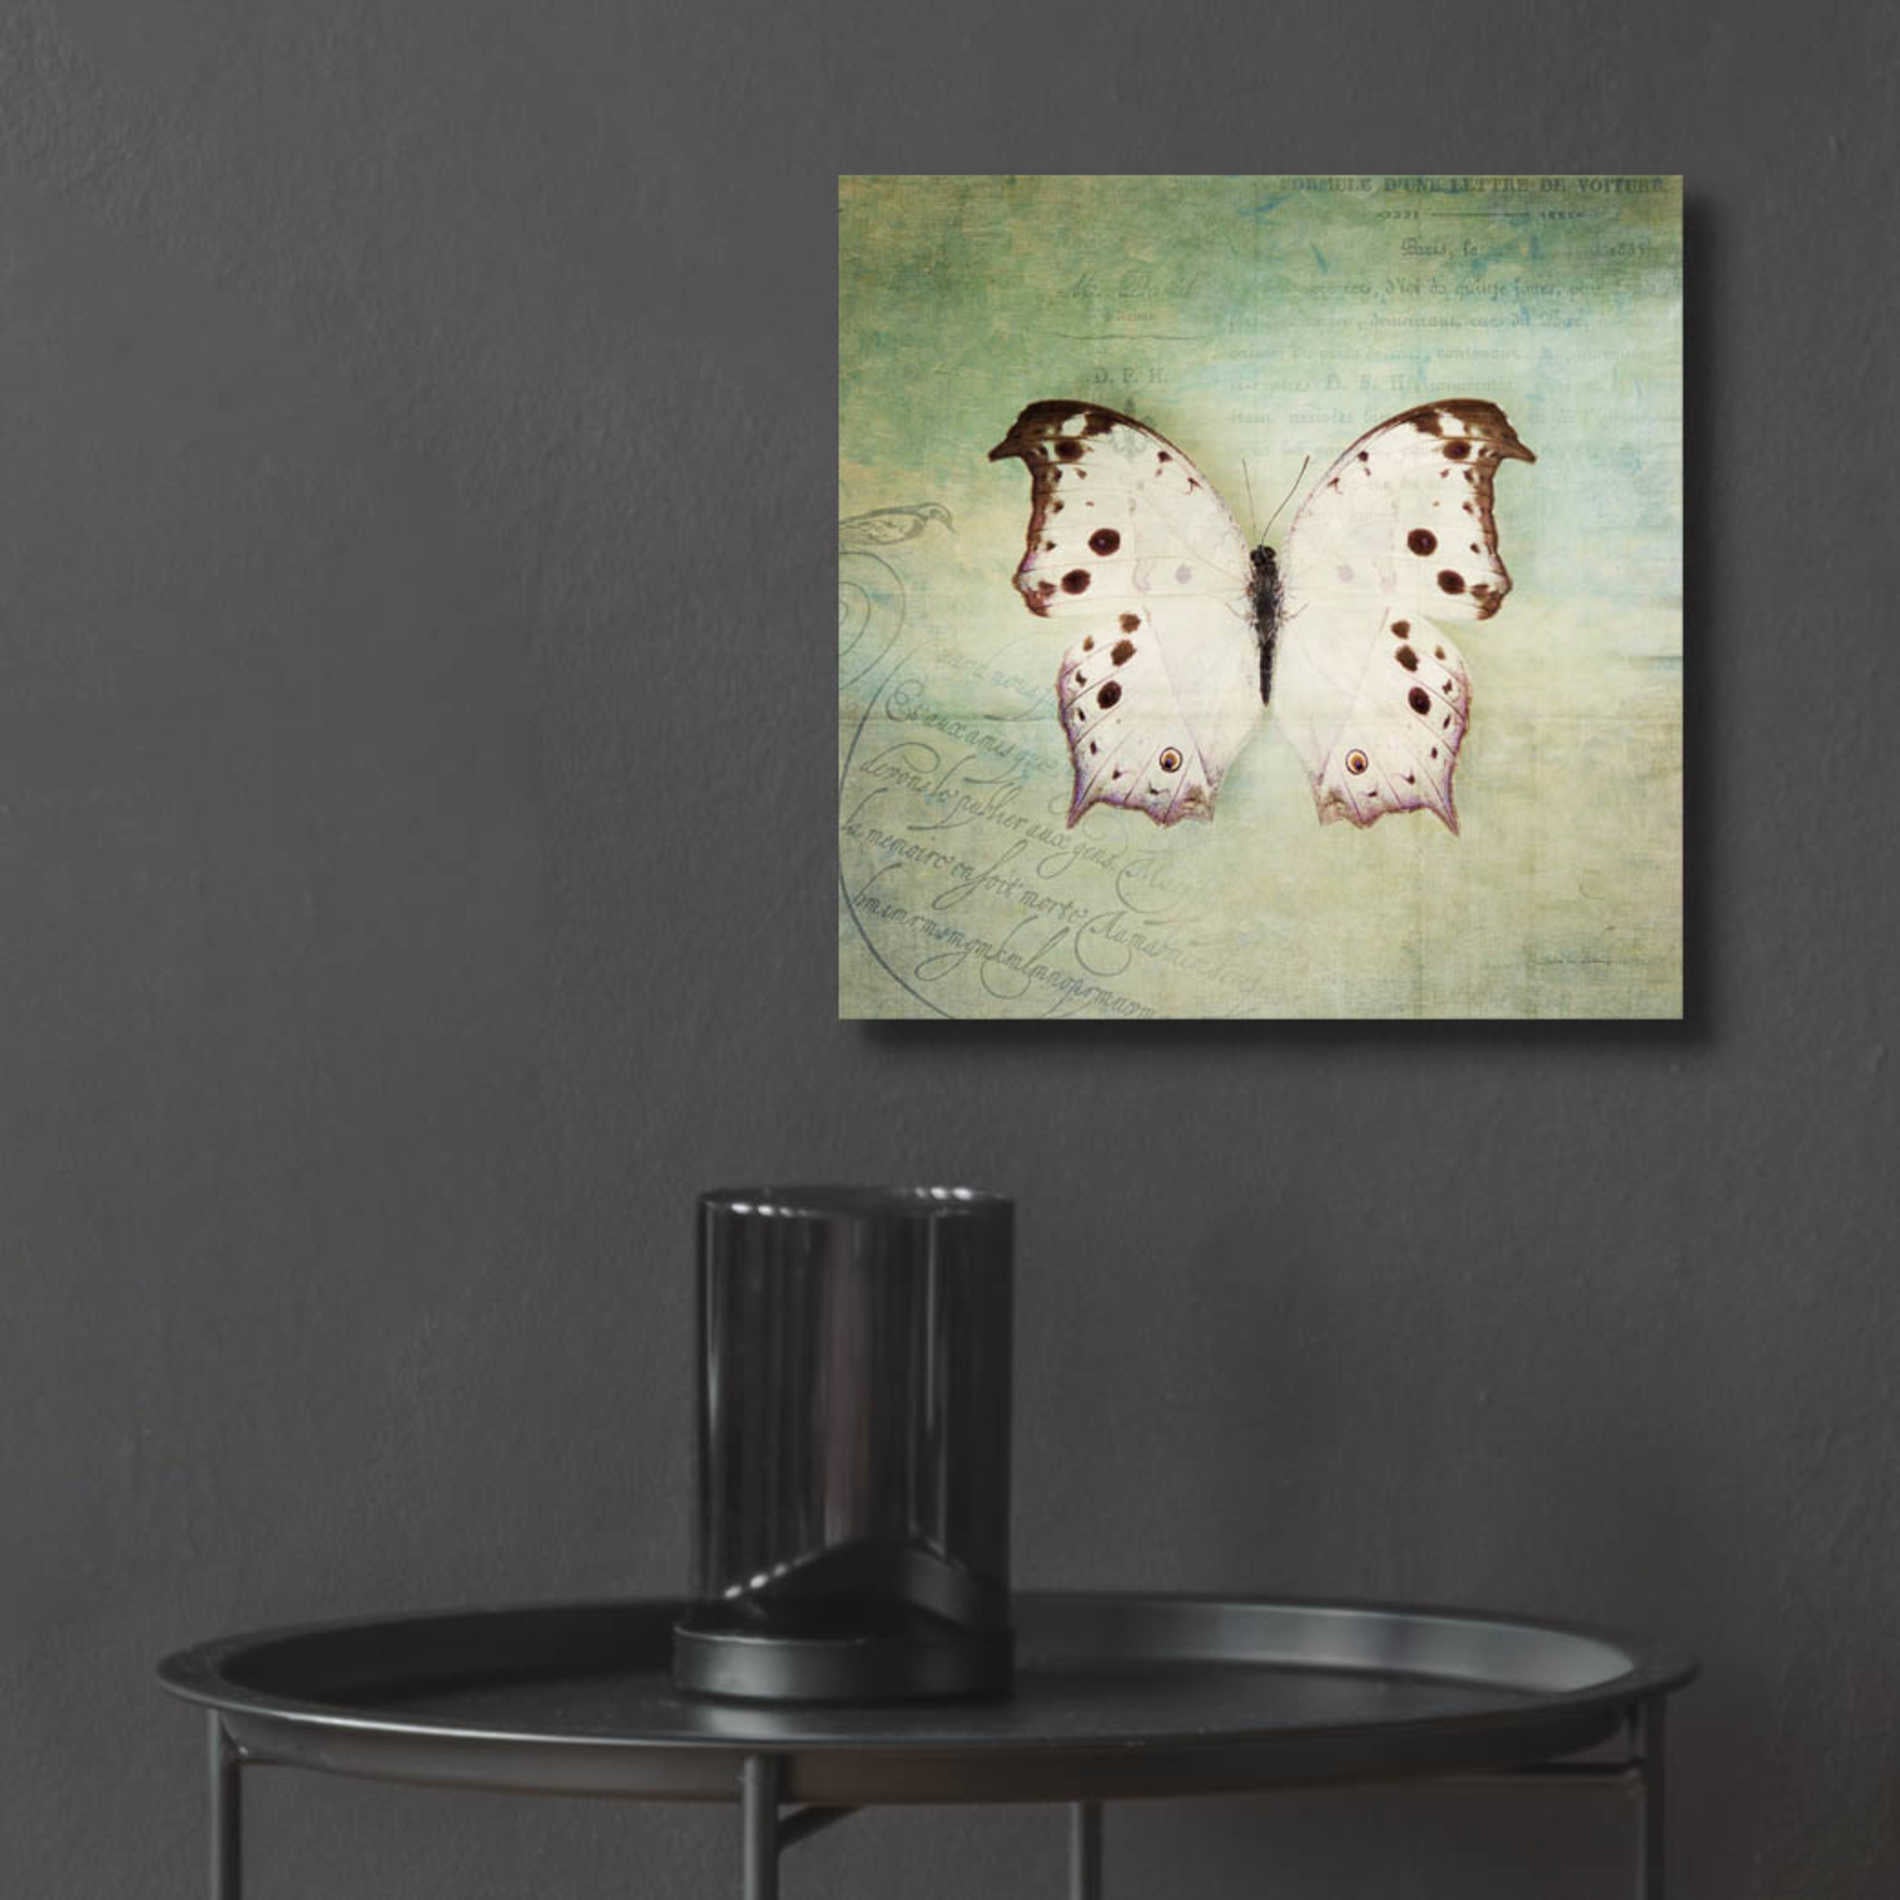 Epic Art 'French Butterfly IV' by Debra Van Swearingen, Acrylic Glass Wall Art,12x12